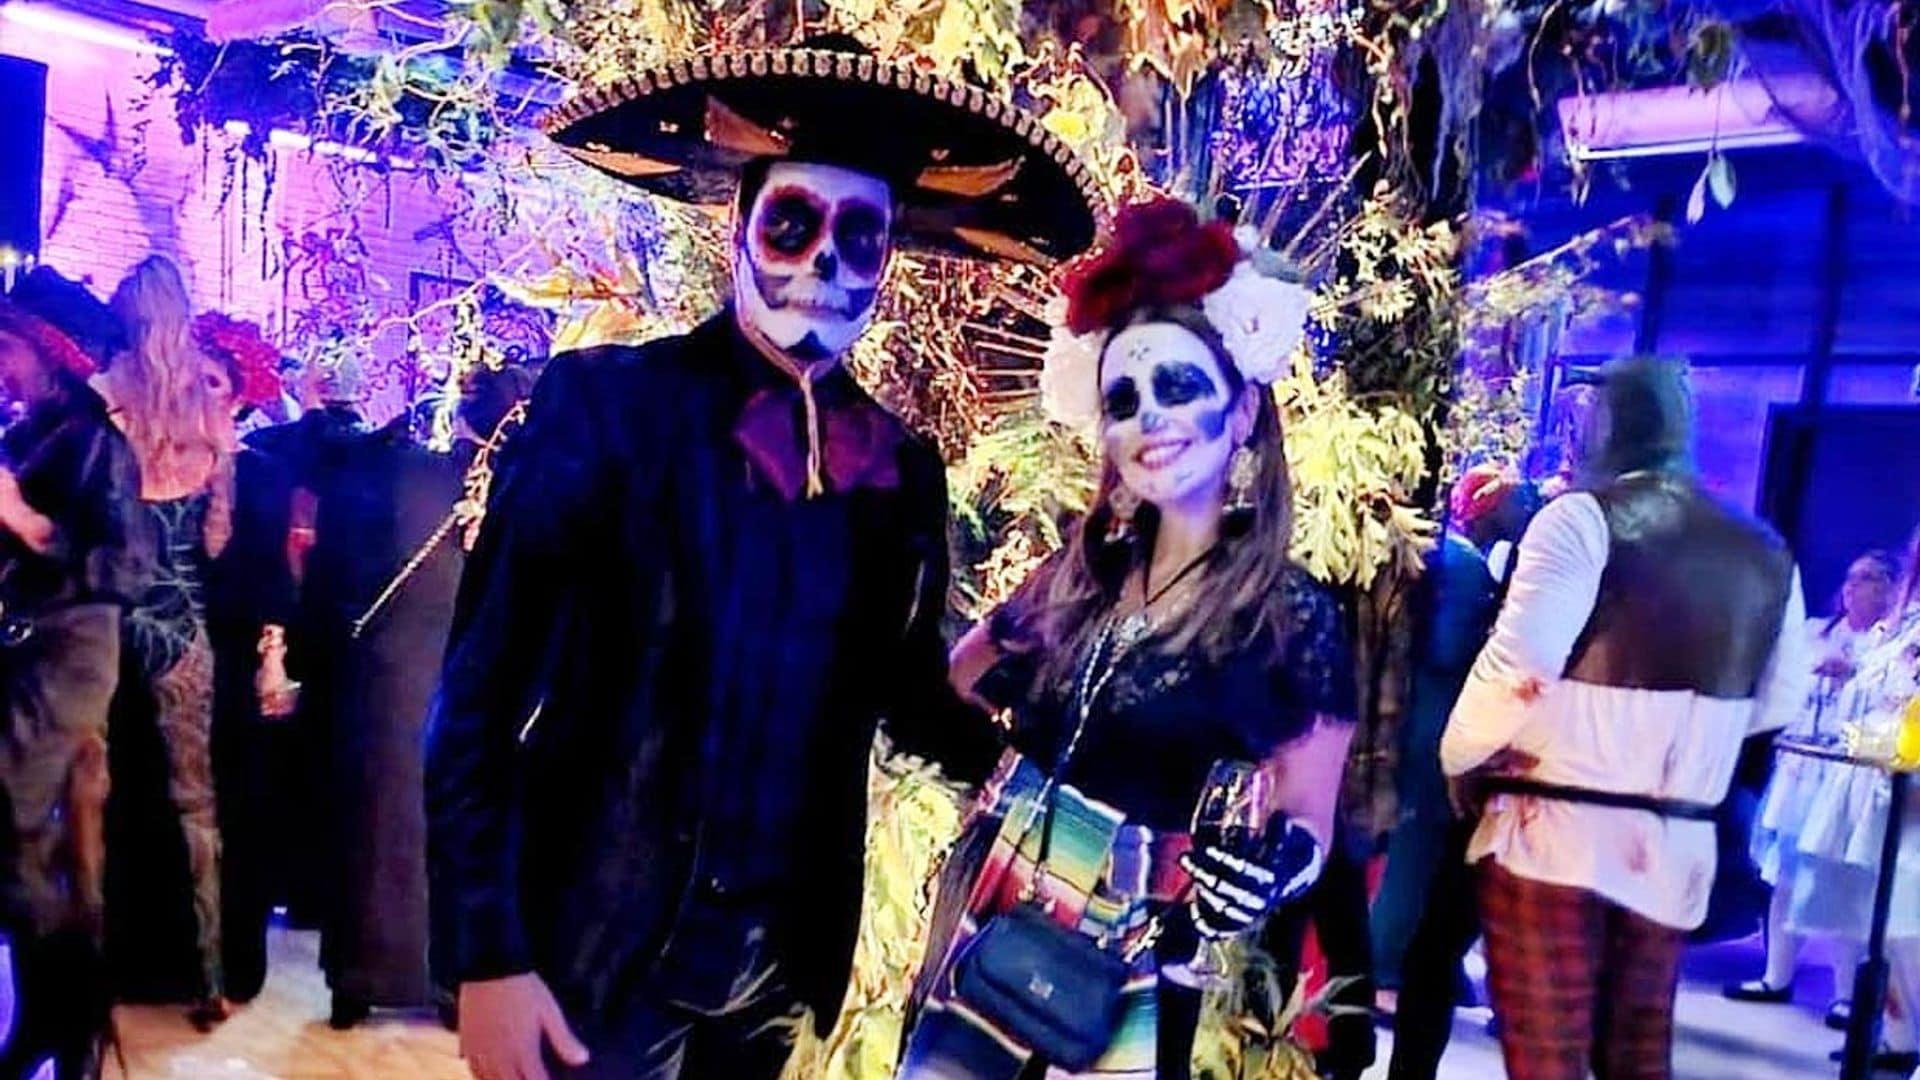 ¡Una noche terrorífica! Paula Echevarría y Miguel Torres, irreconocibles en una fiesta de Halloween